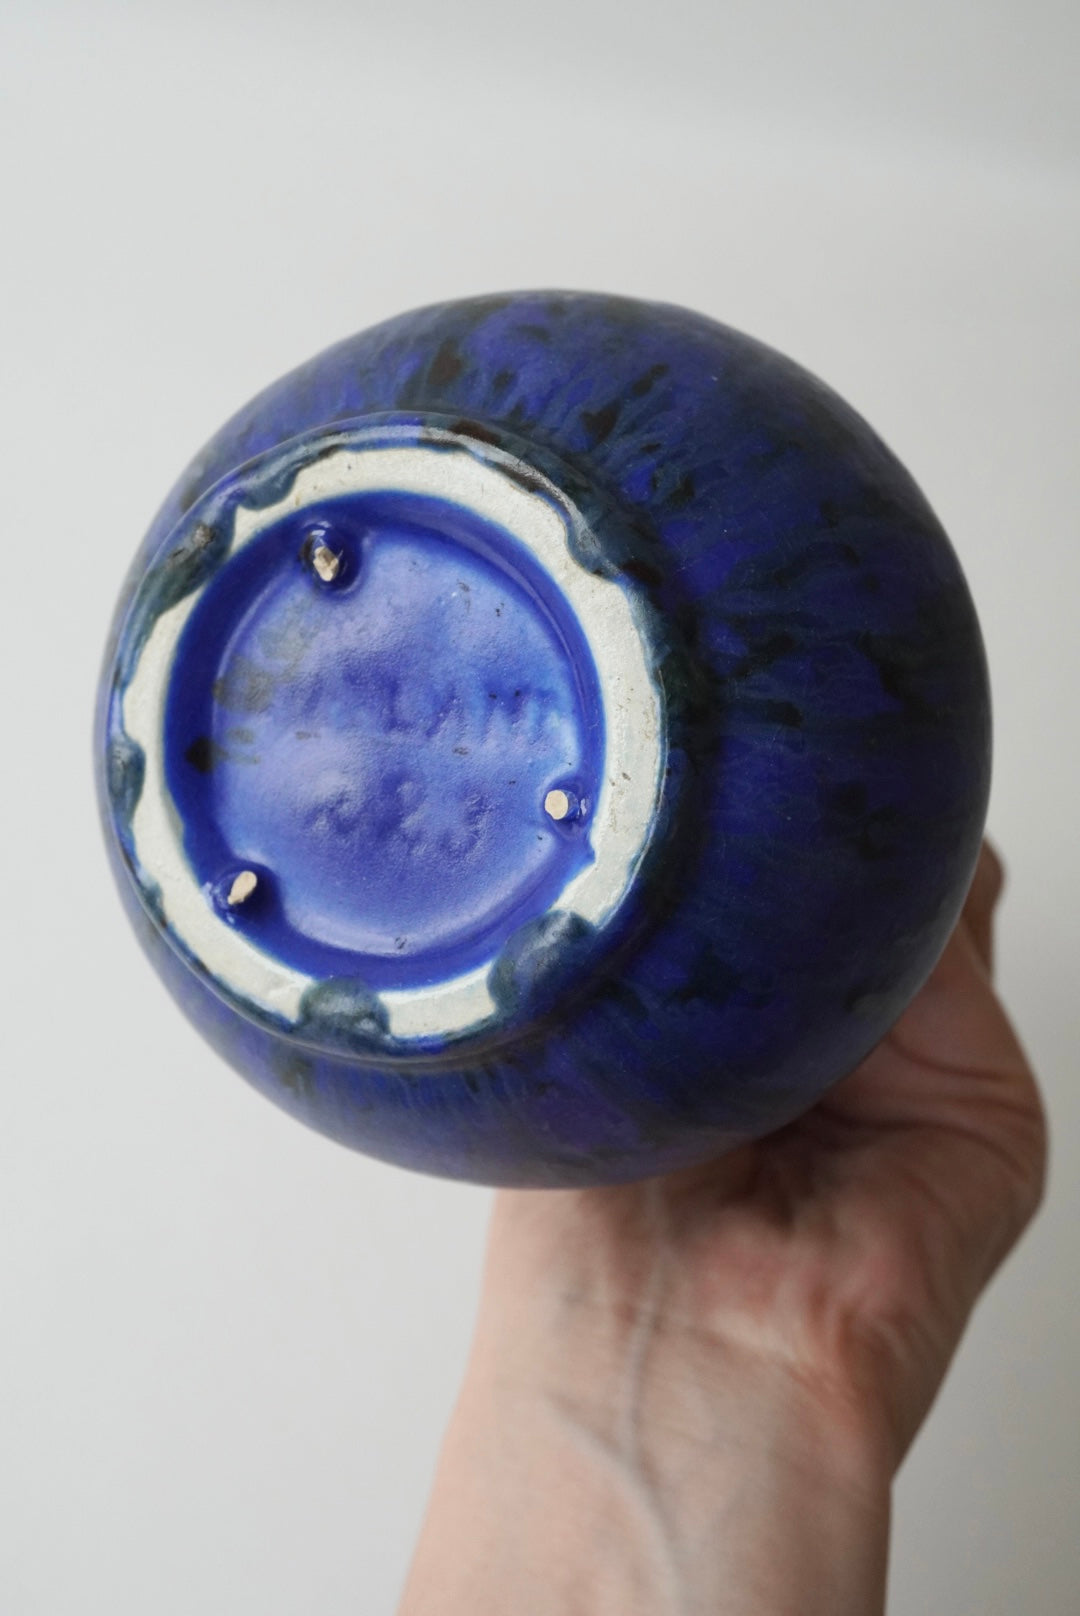 Marbled Blue Vase